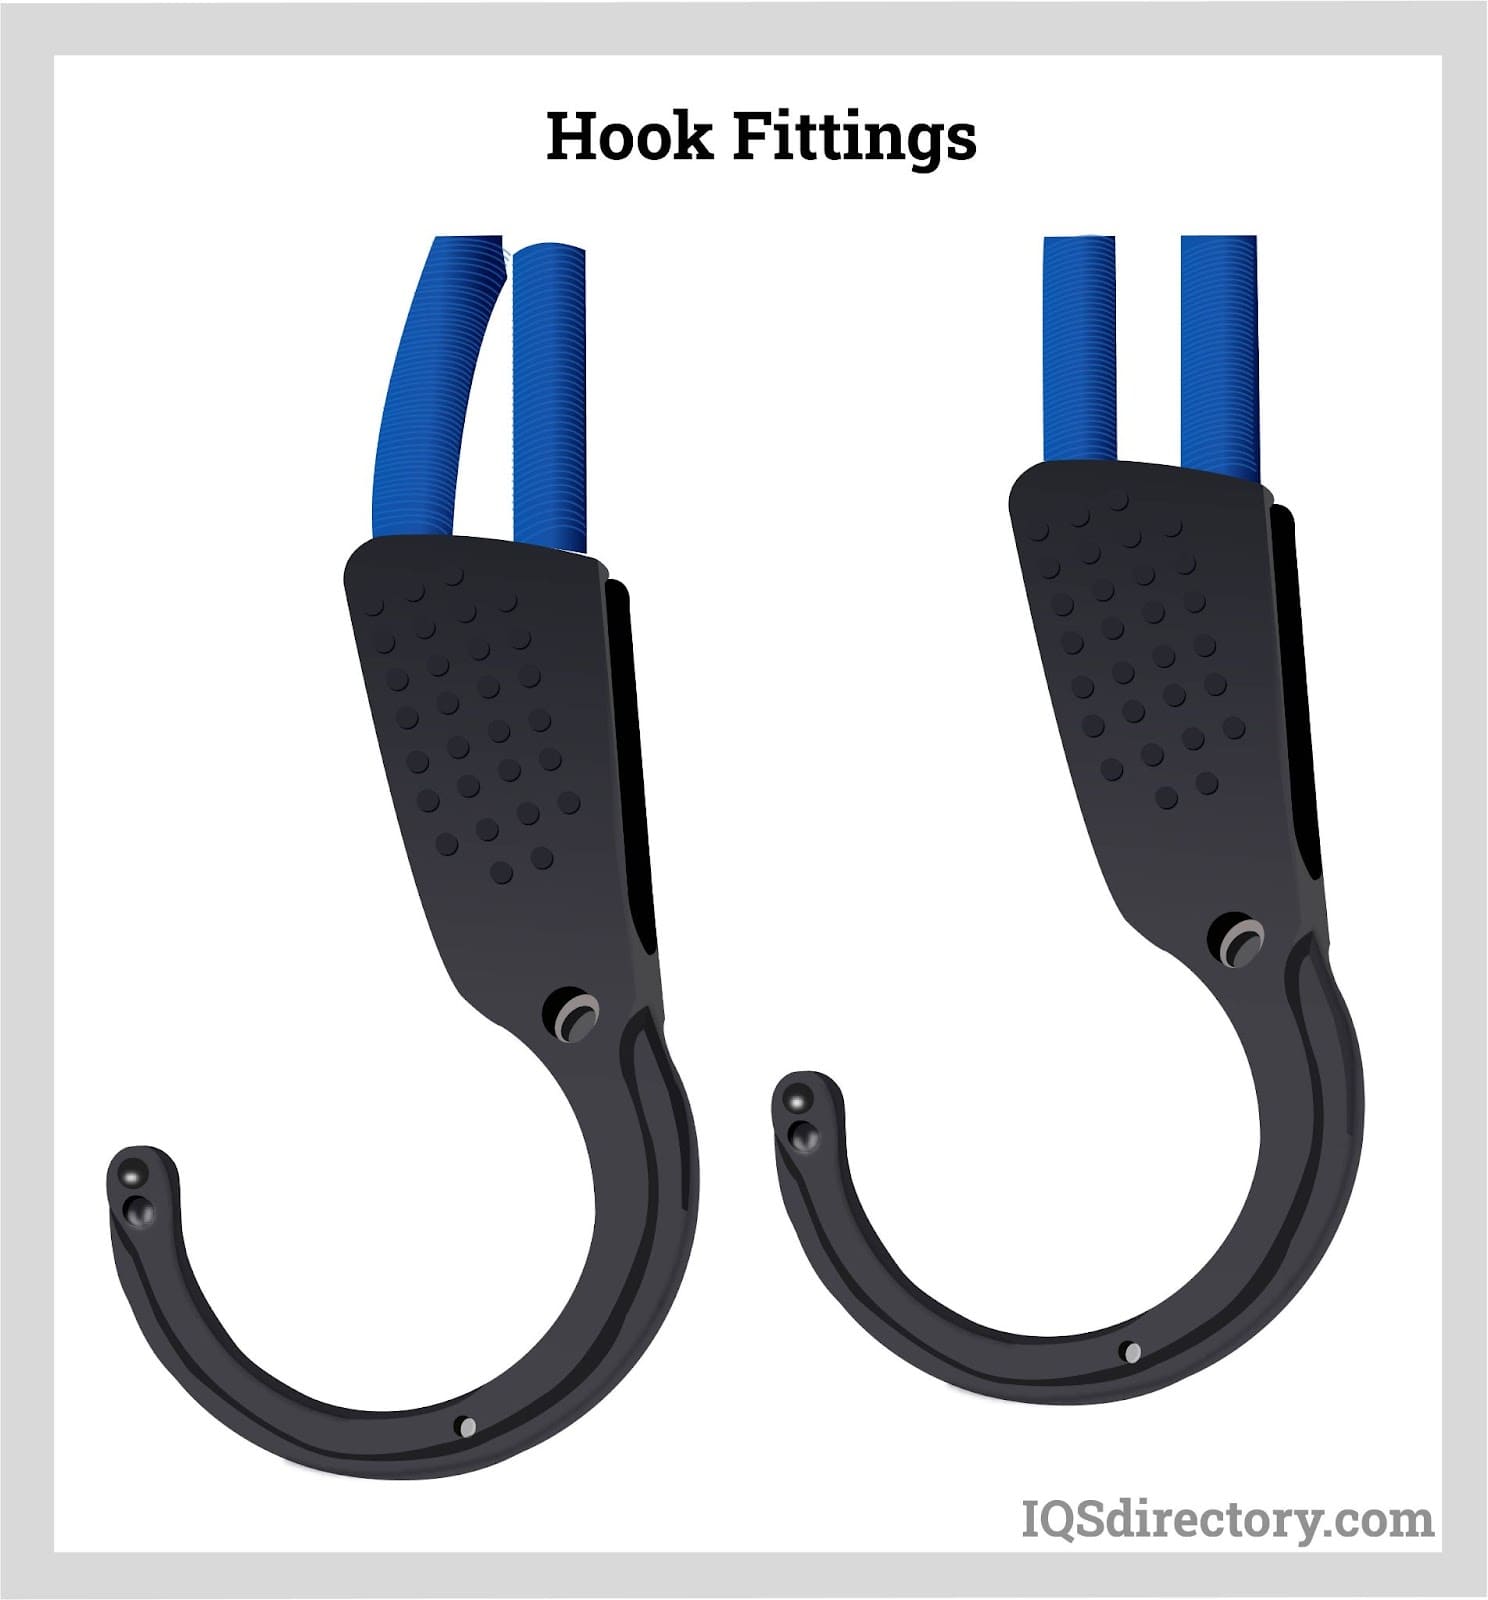 Hook Fittings